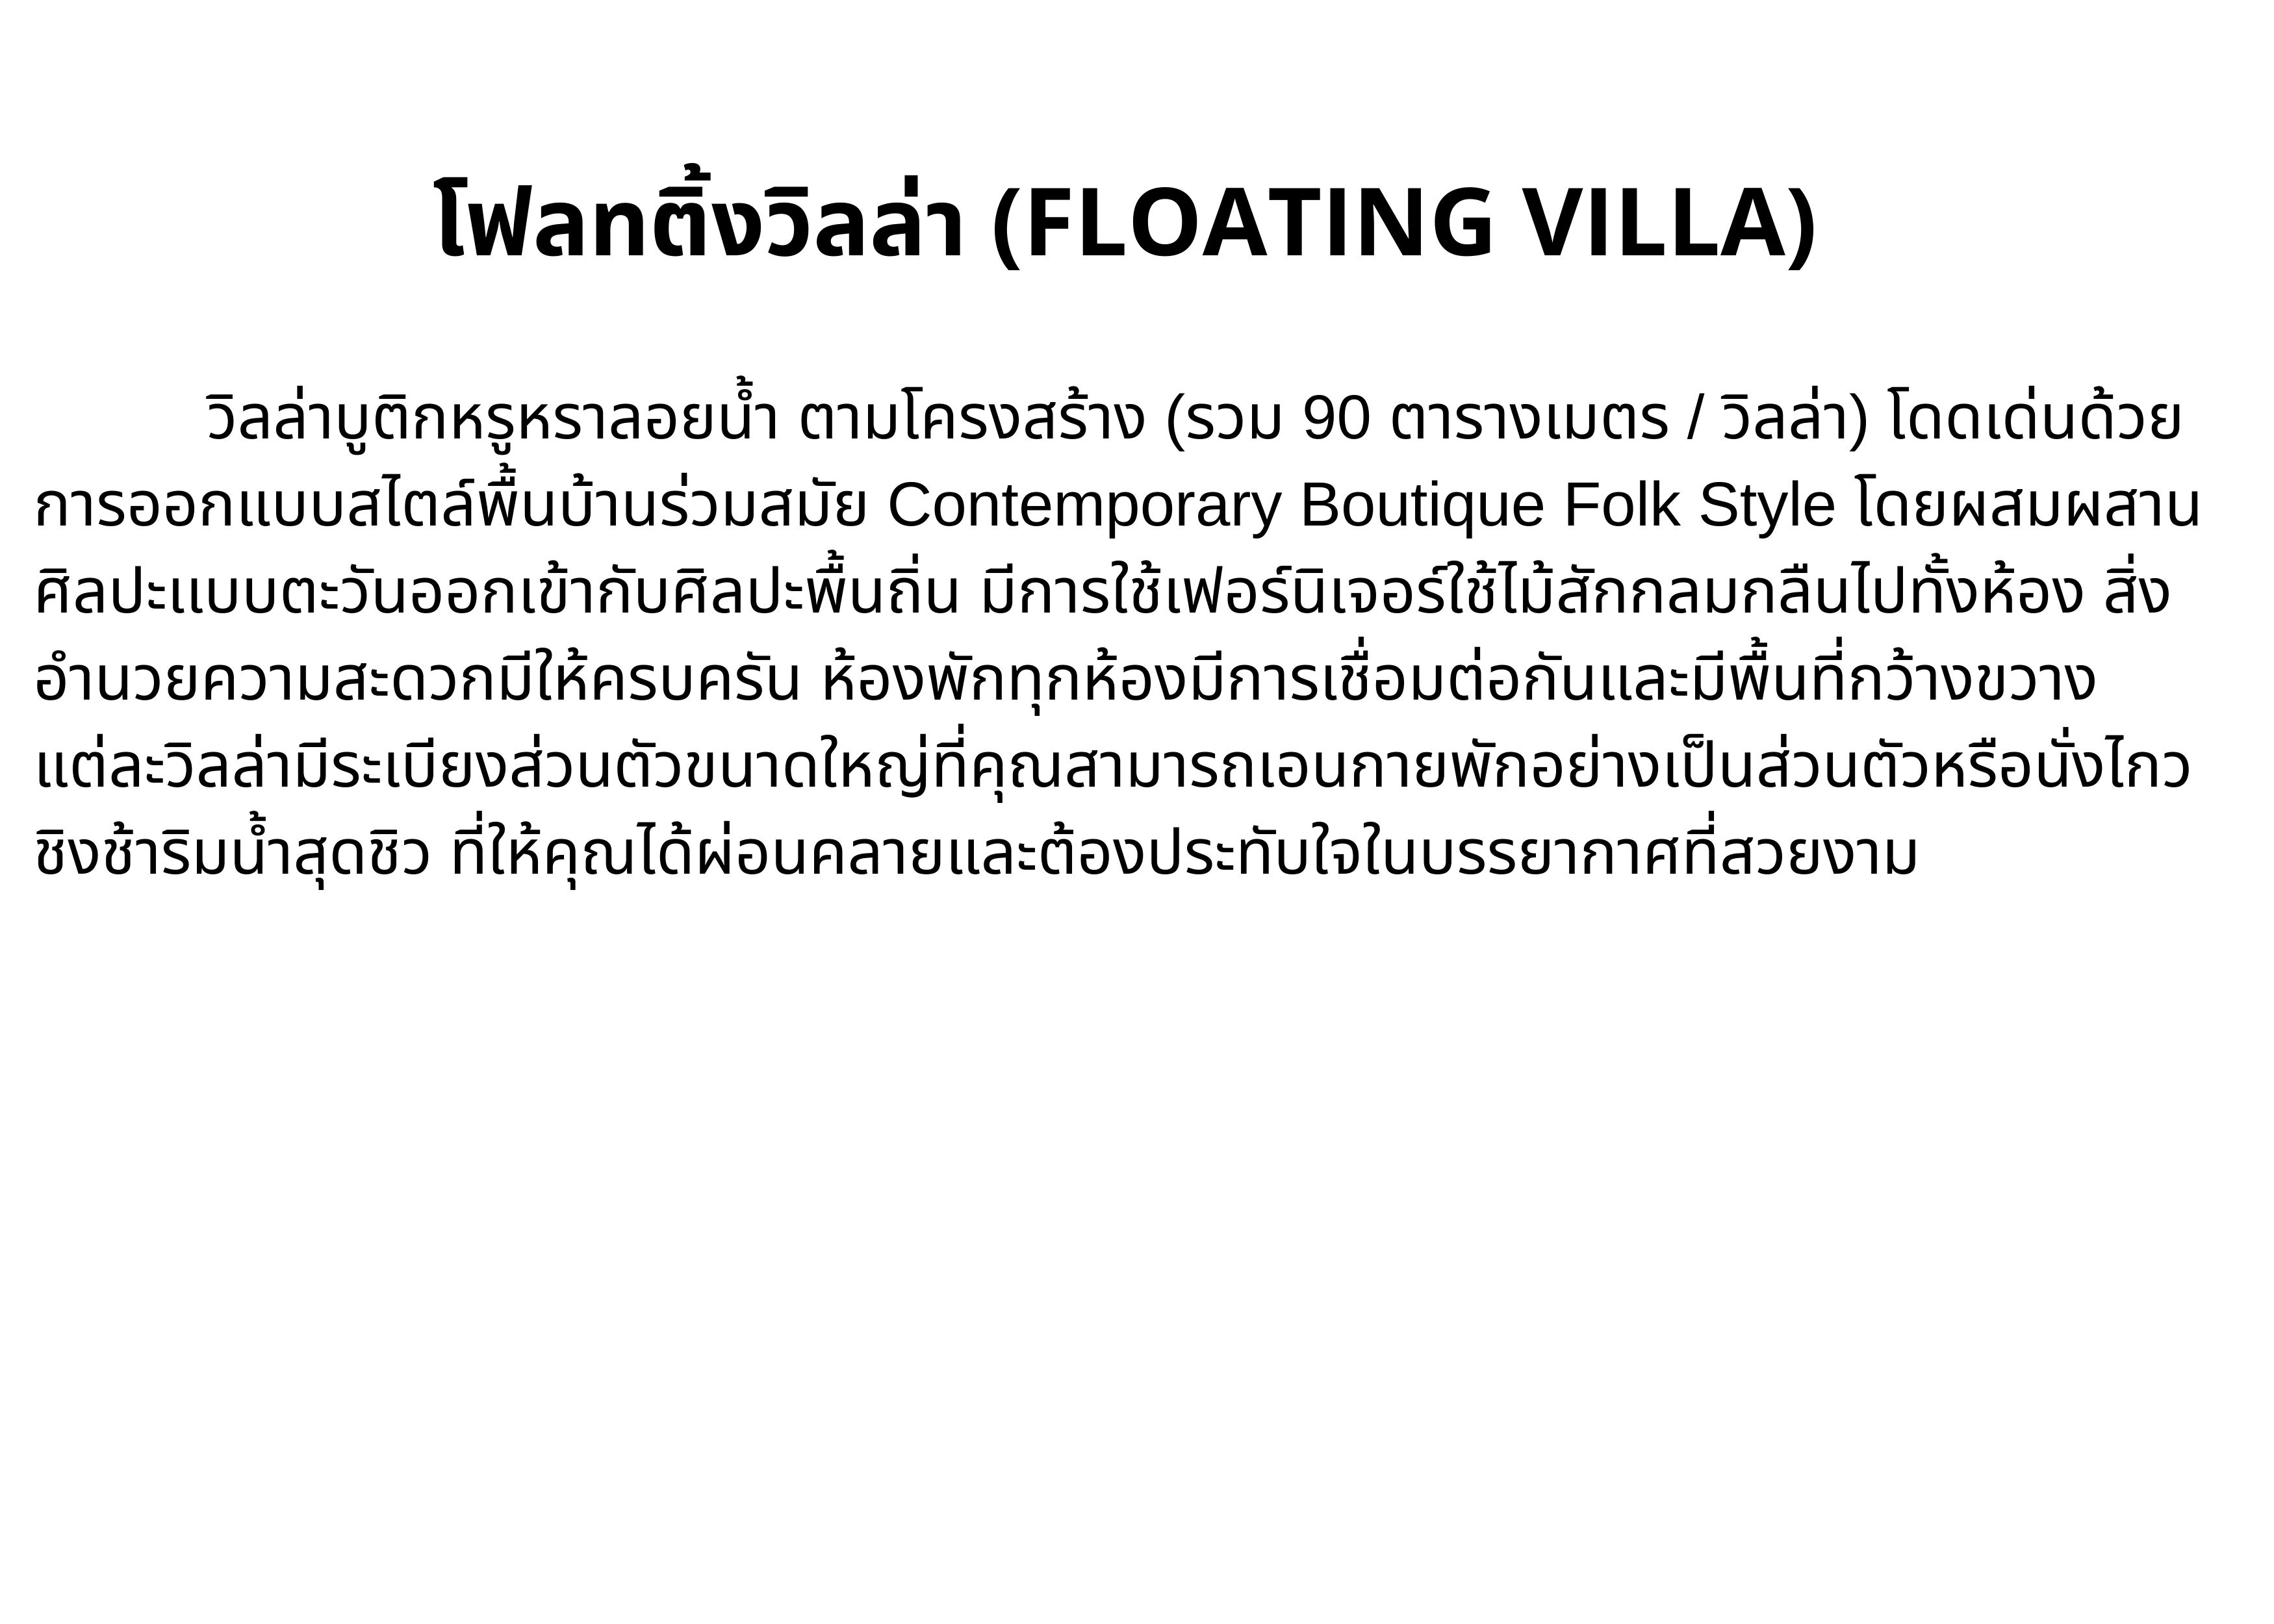 ข้อมูลเกี่ยวกับ [E-vo] The Float House River Kwai, กาญจนบุรี - เข้าพักได้ถึง 31 ต.ค. 66 ห้อง Floating Villa 1 คืน พร้อมอาหารเช้า 2 ท่าน